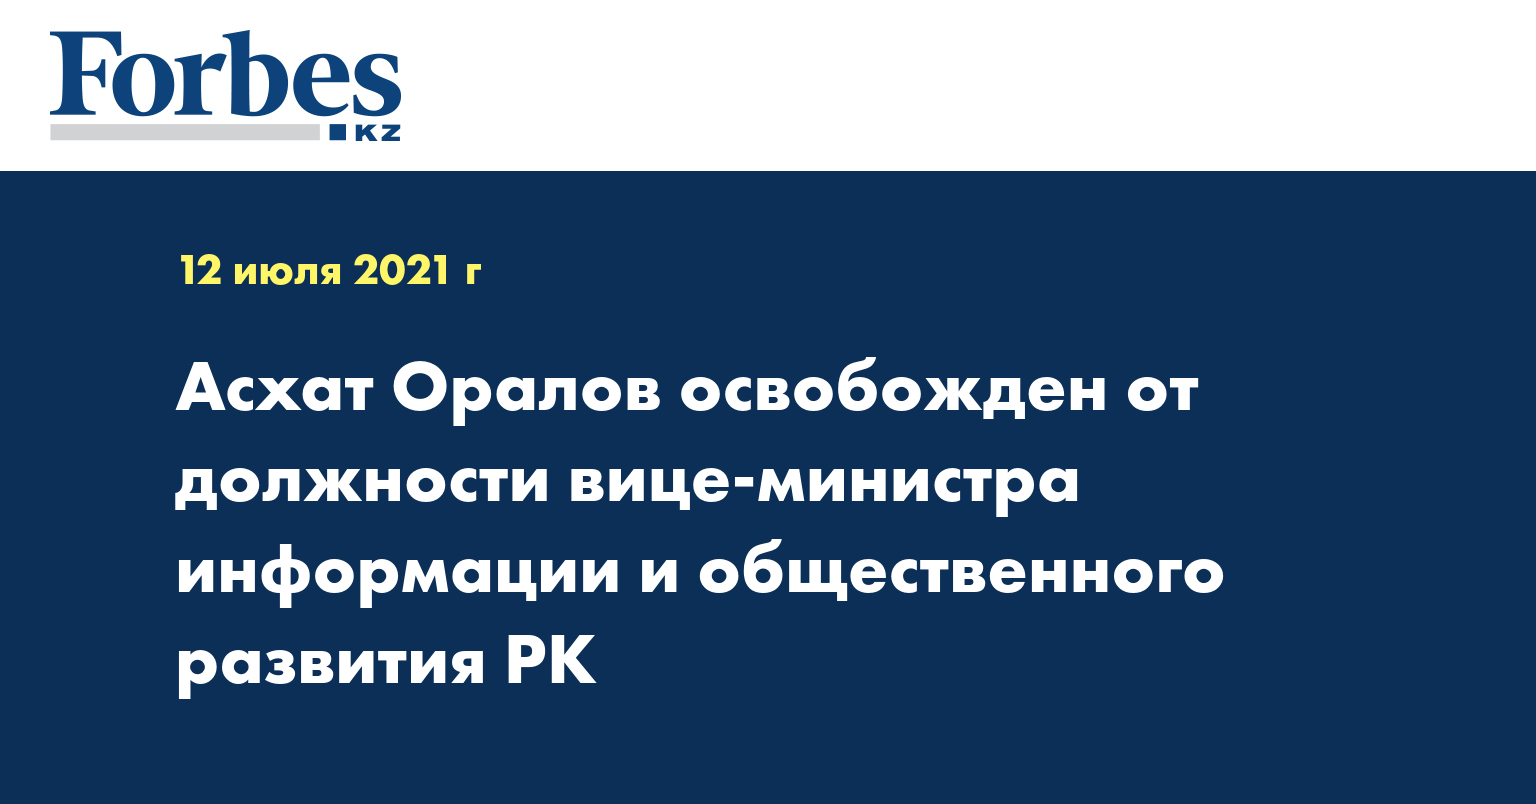 Асхат Оралов освобожден от должности вице-министра информации и общественного развития РК